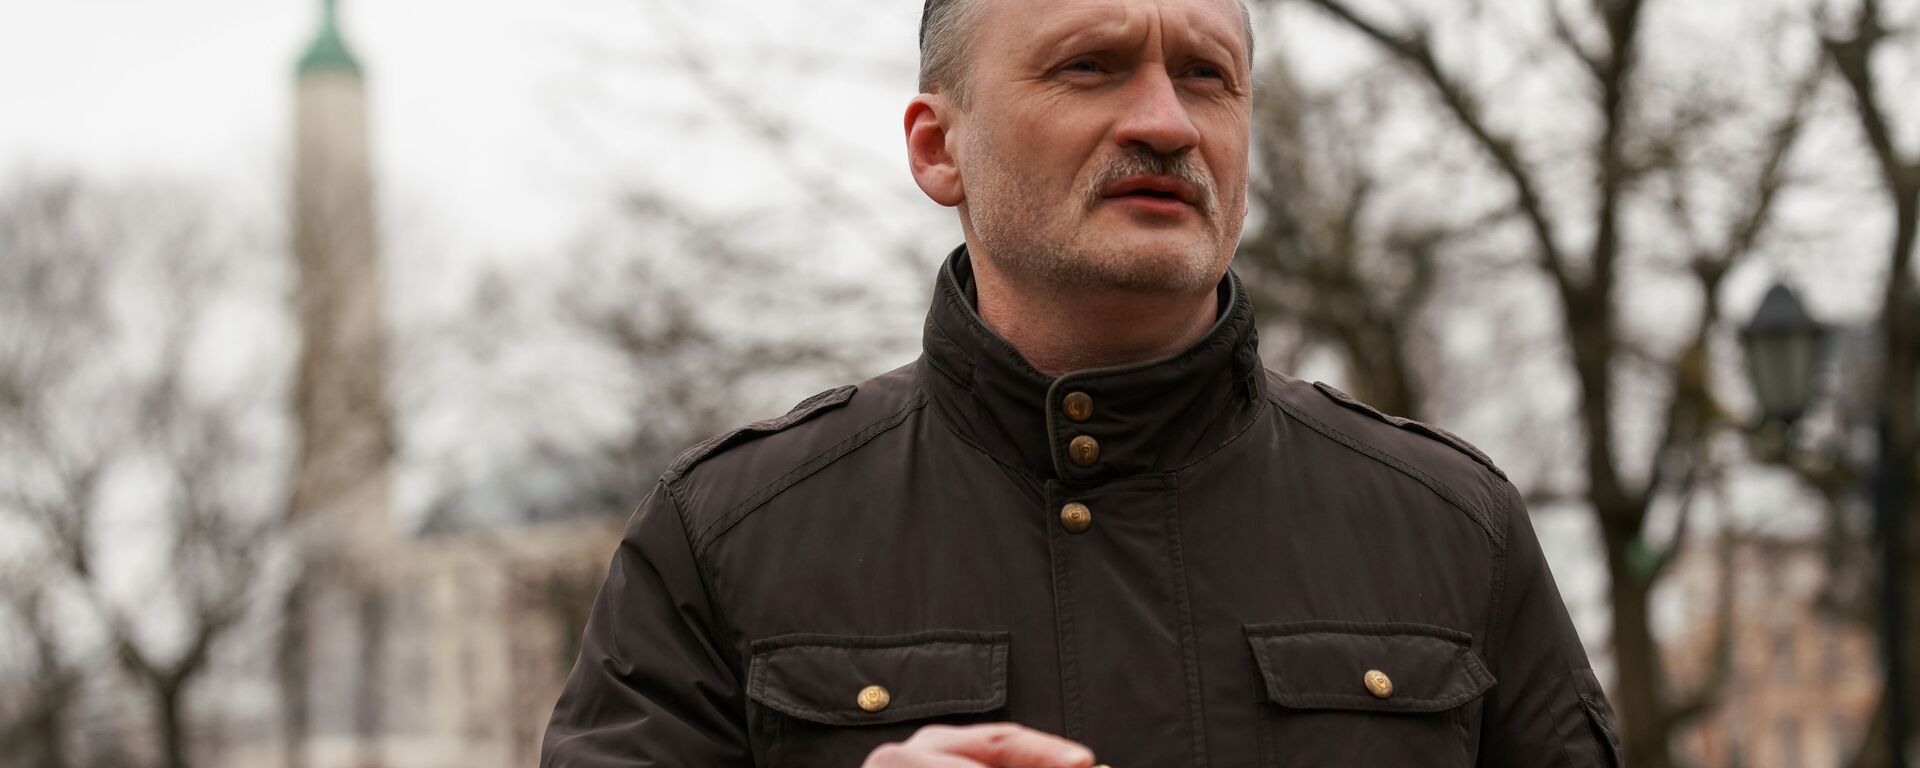 Сопредседатель РСЛ Мирослав Митрофанов (в центре) возле памятника Свободы в Риге 16 марта 2020 года - Sputnik Латвия, 1920, 09.12.2021